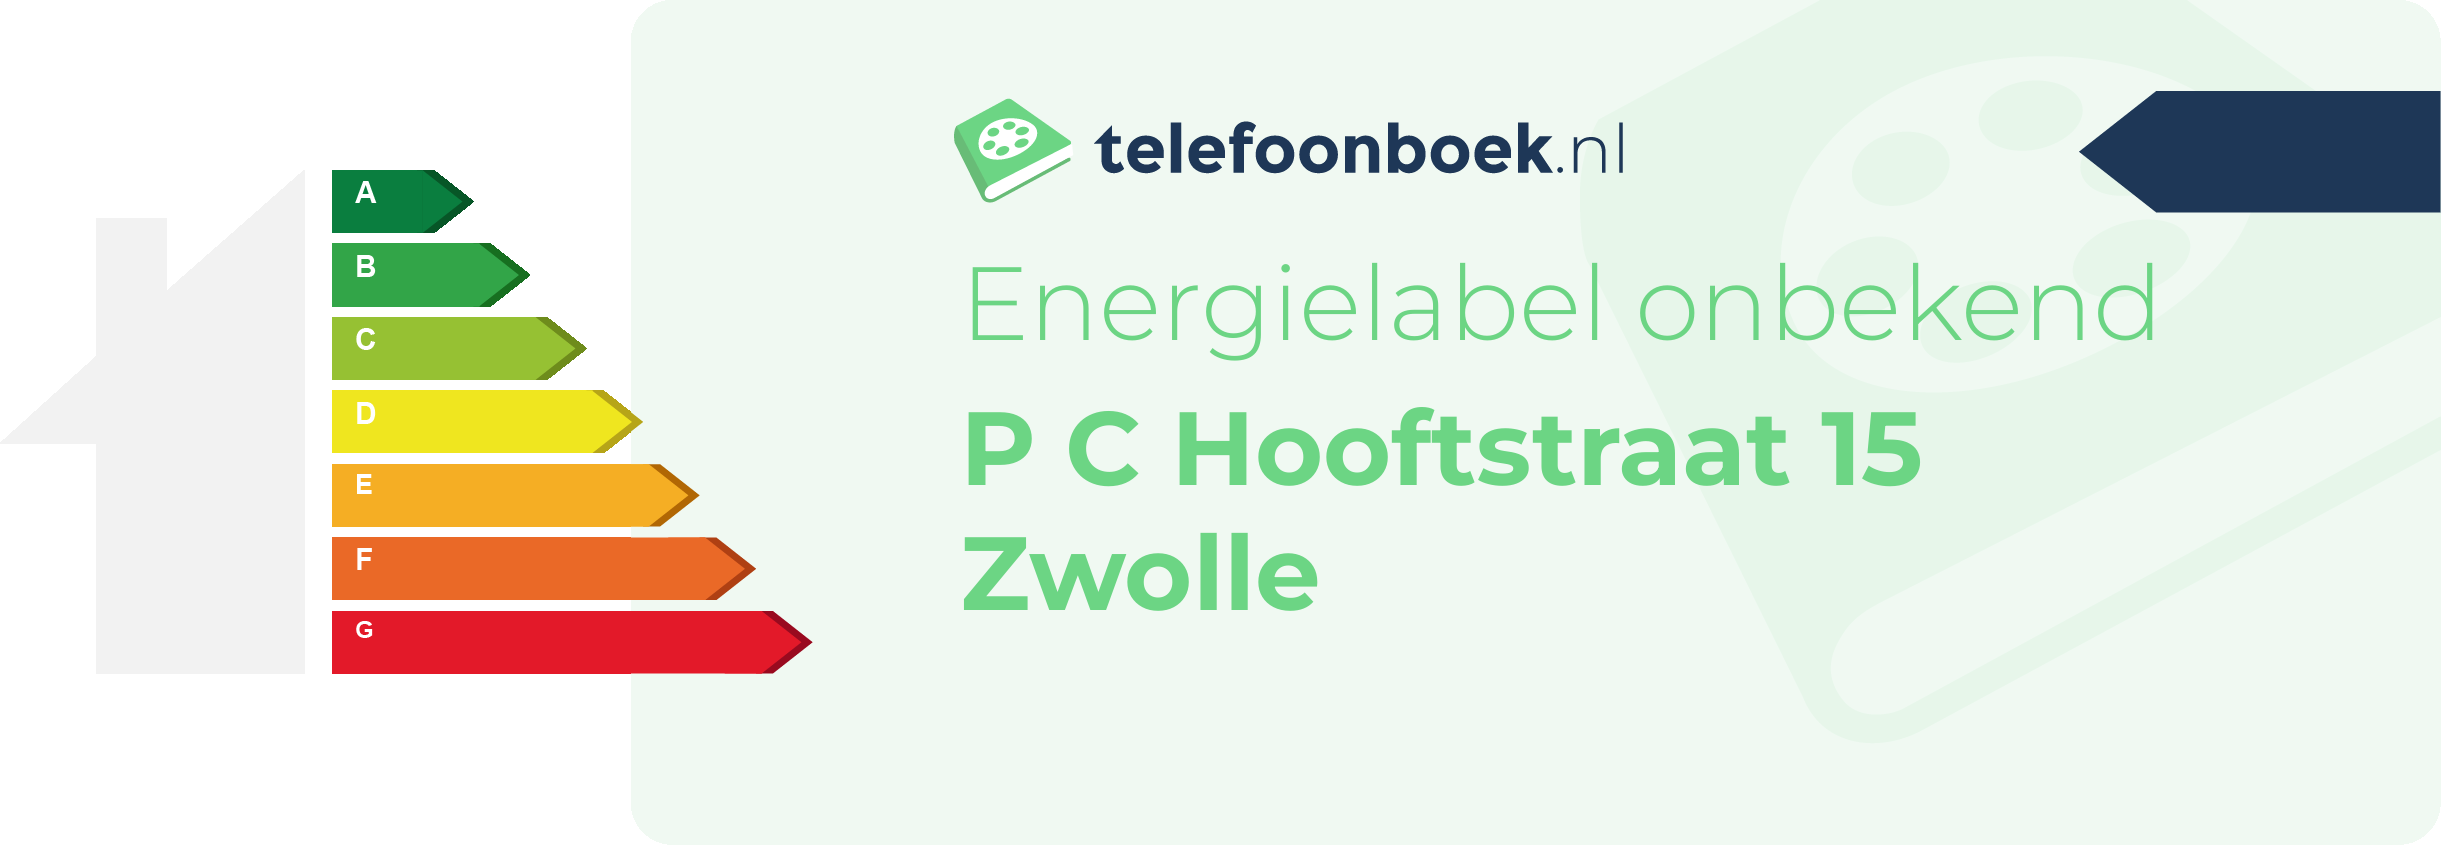 Energielabel P C Hooftstraat 15 Zwolle